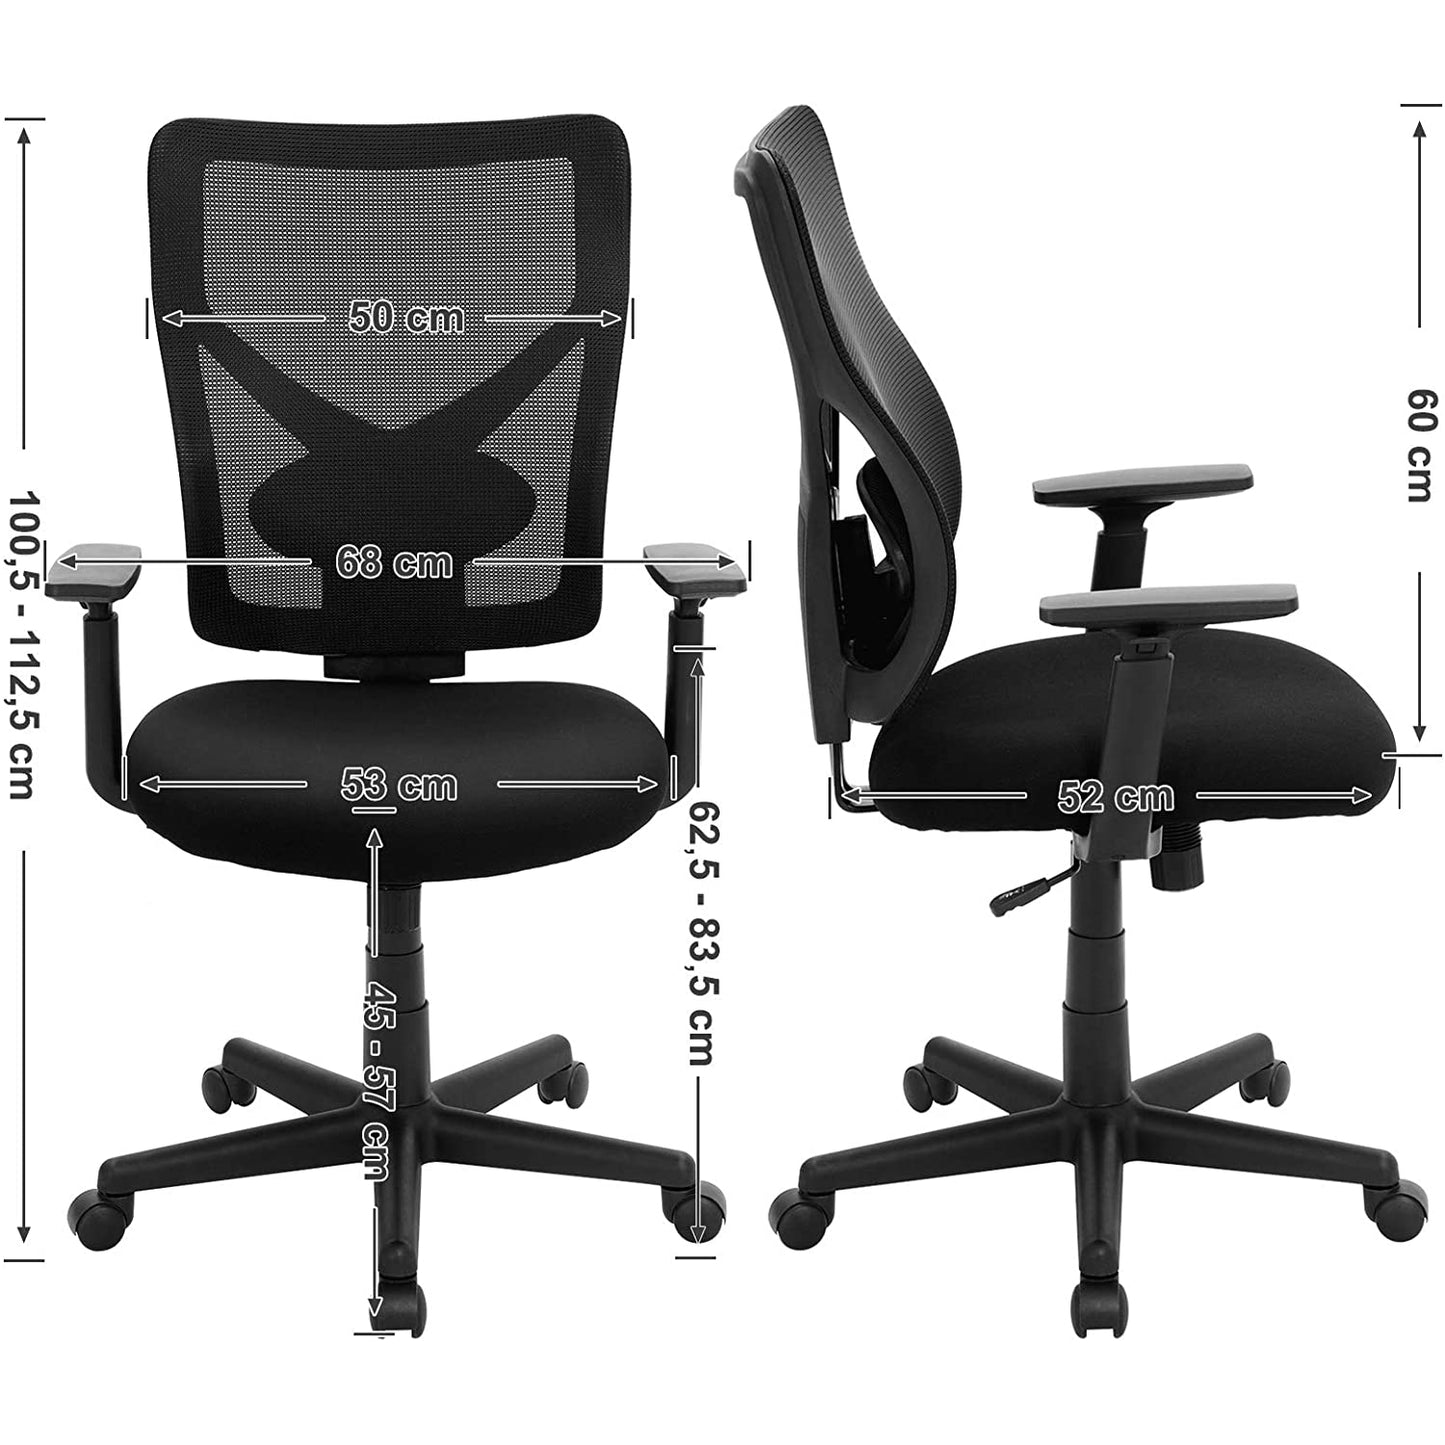 Chaise de bureau Nancy's Bristol - Chaise de bureau - Chaise d'ordinateur ergonomique - Noir